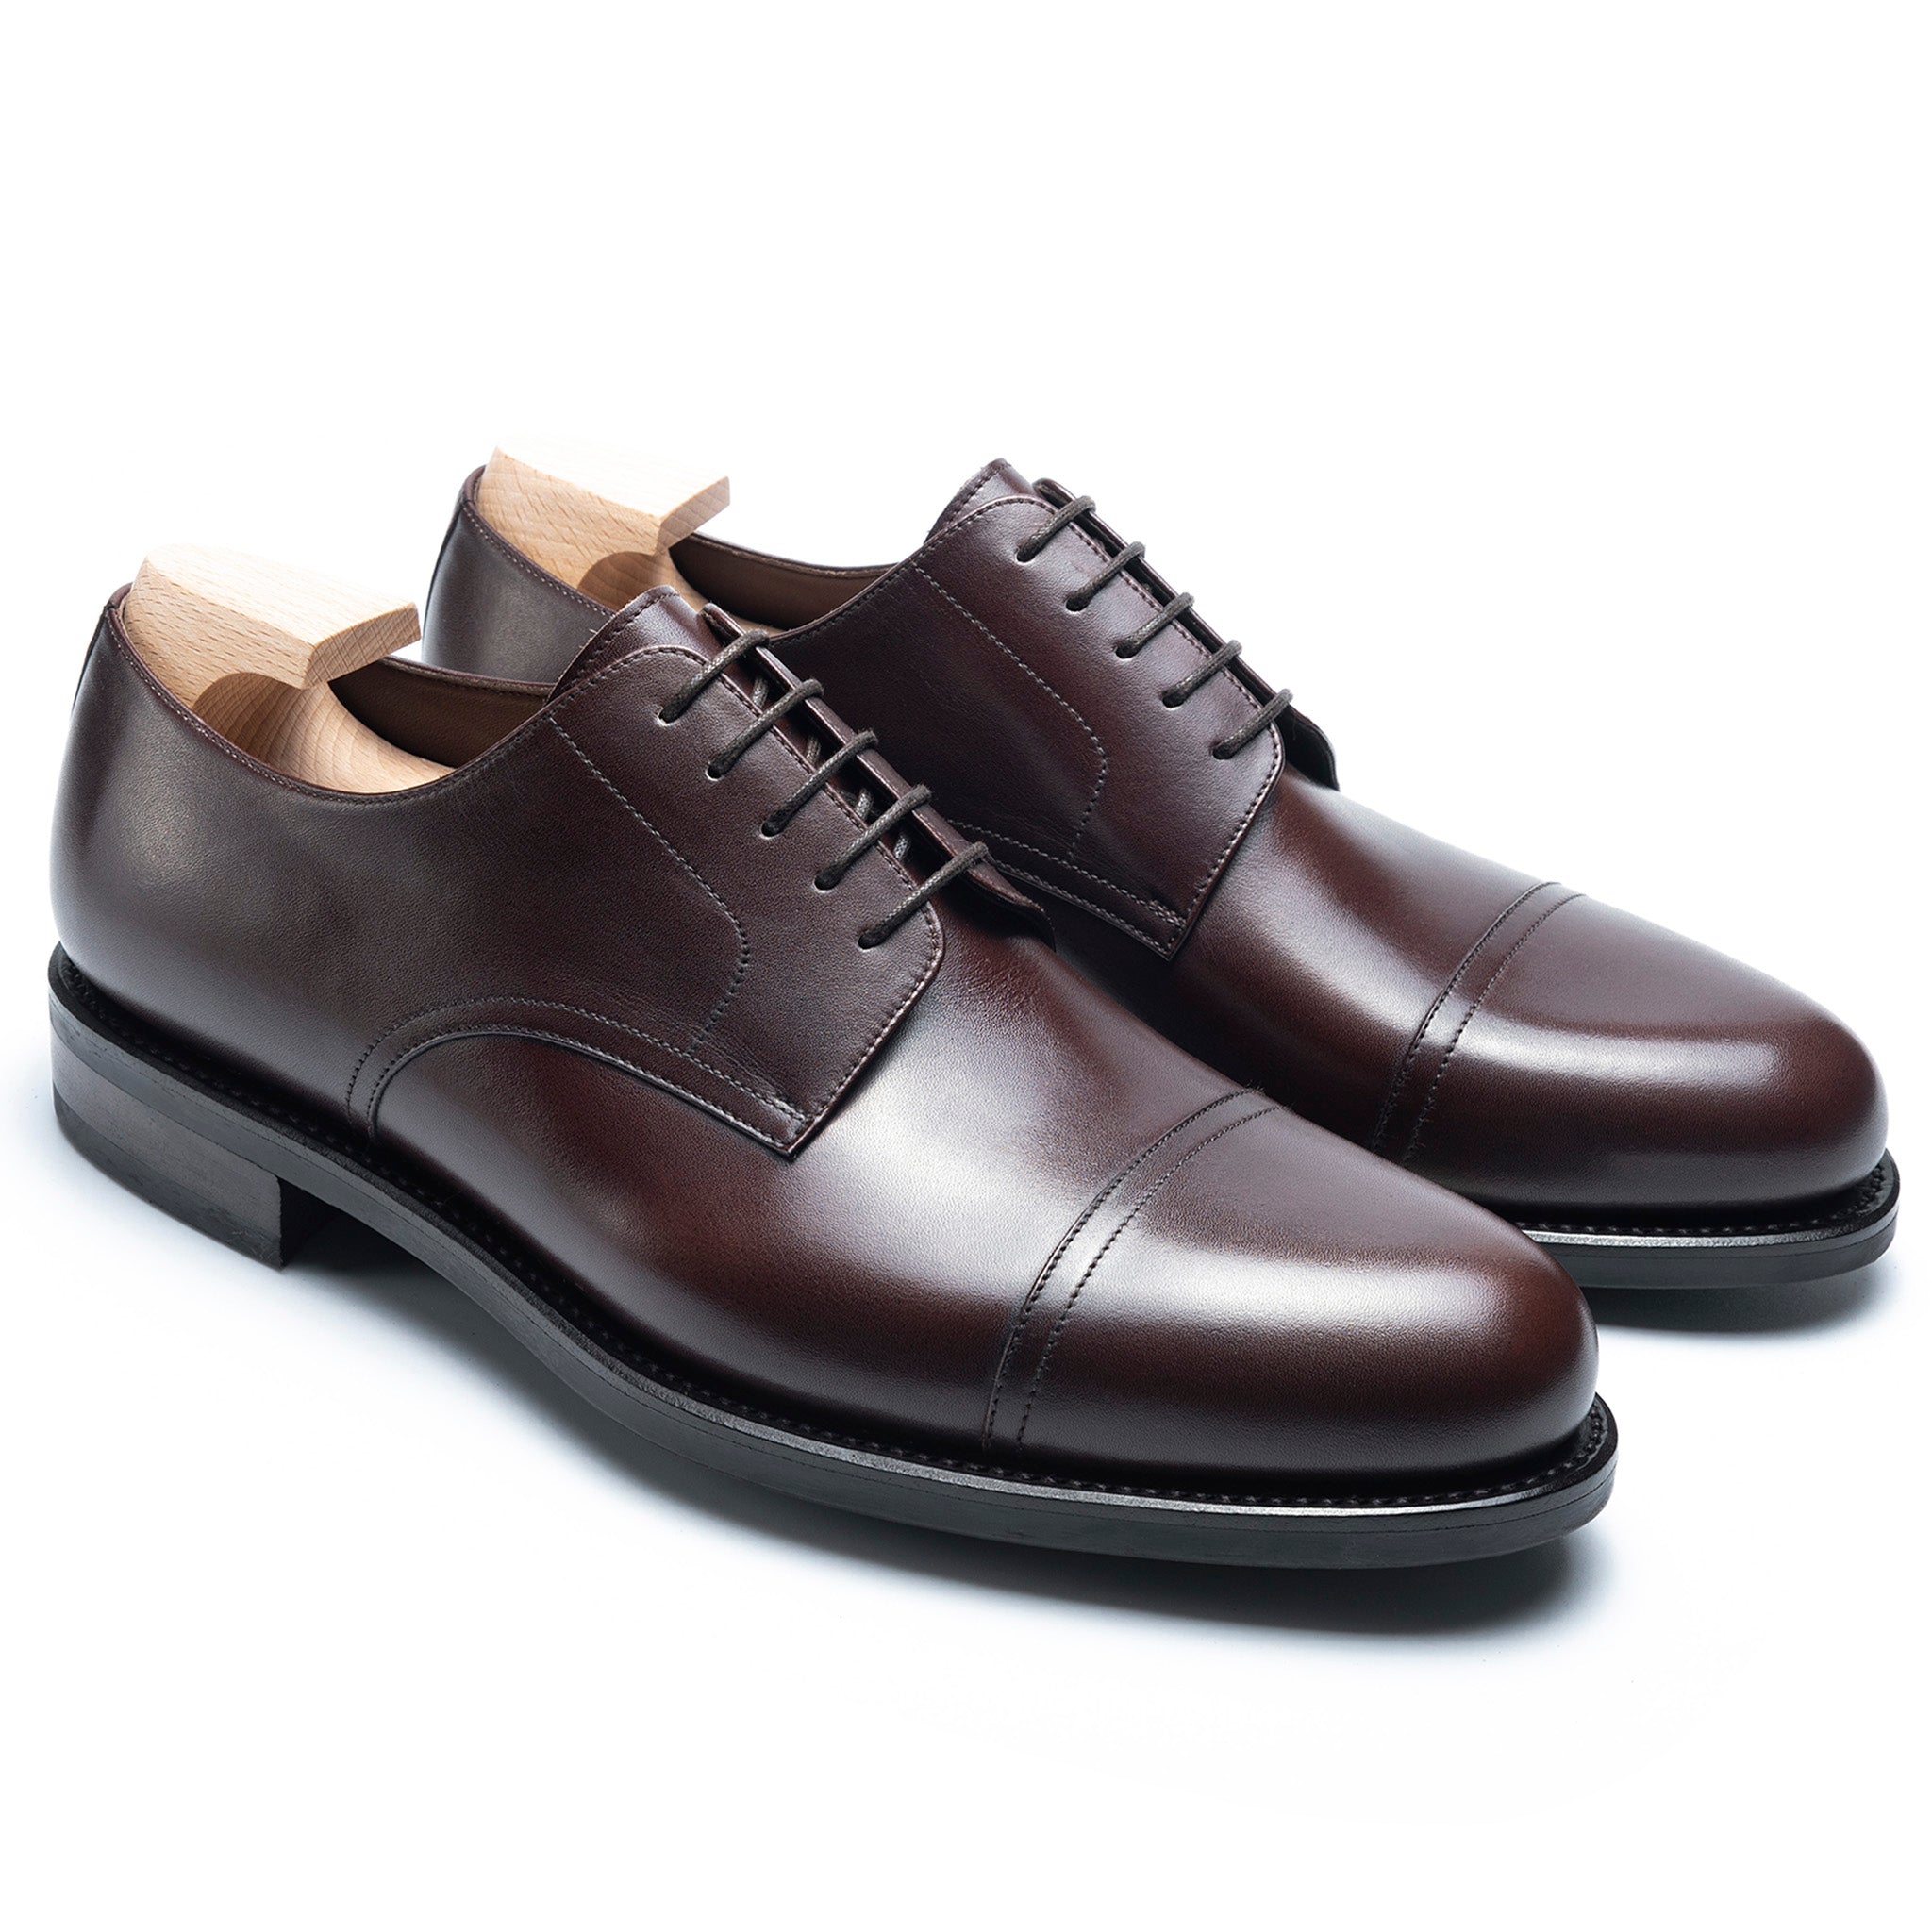 TLB Mallorca Shoes Blucher | Men's Blucher Shoes | Madison Vegano dark ...